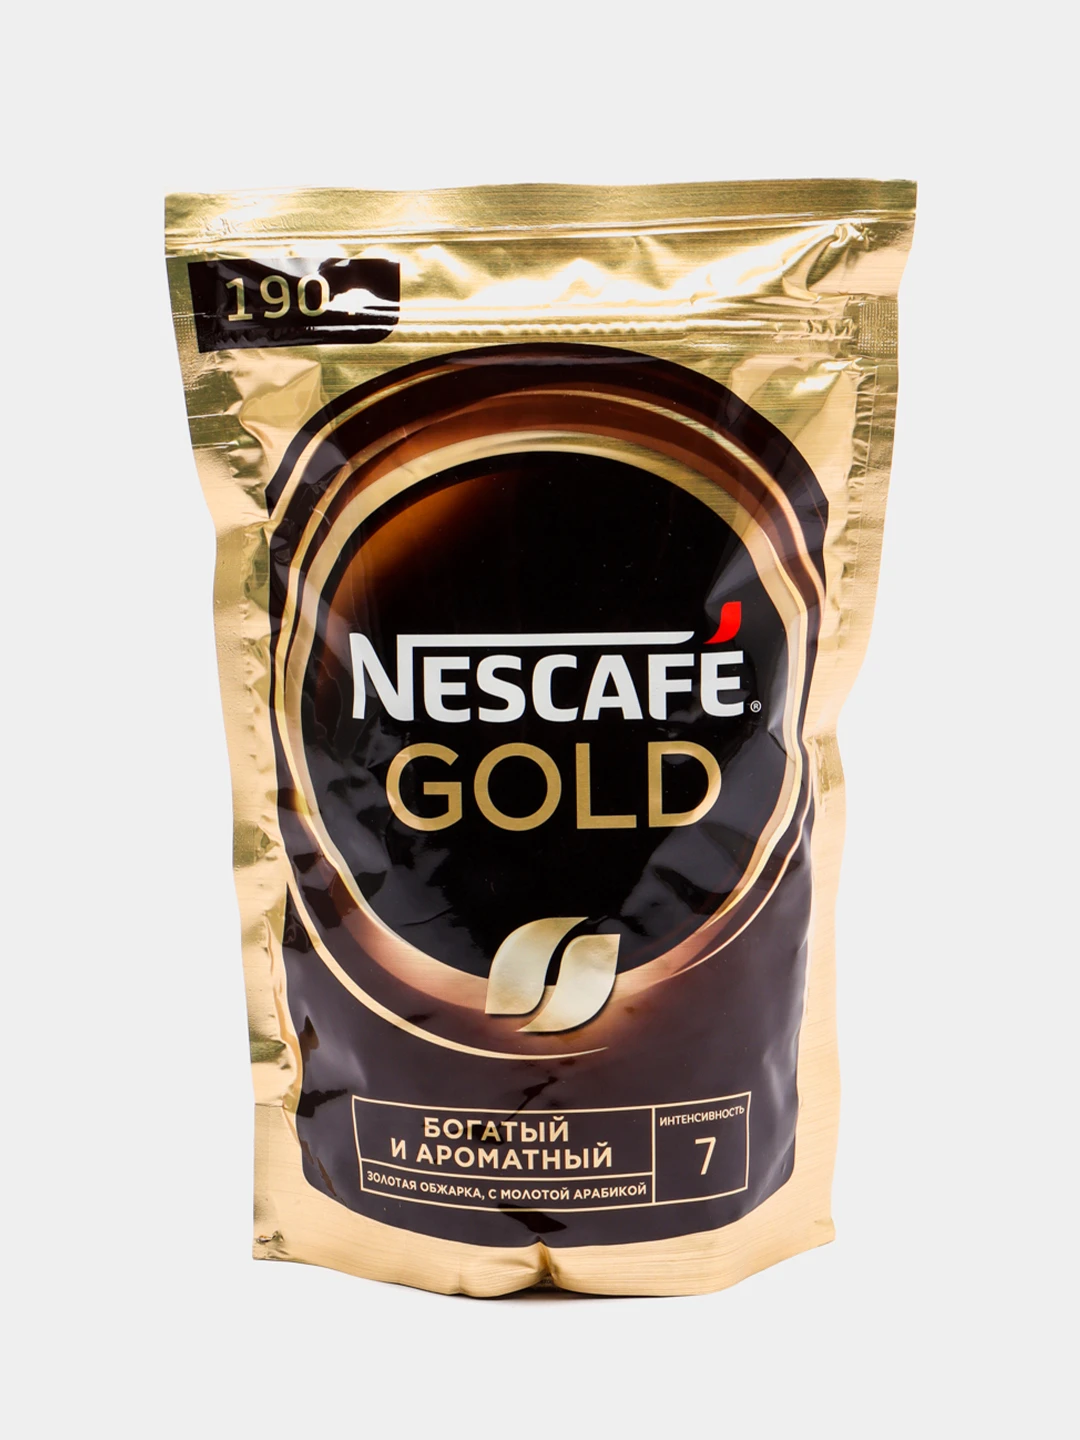 Nescafe gold 190 г. Nescafe Gold doy. Нескафе растворимый с добавлением молотого. Нескафе Голд крема.